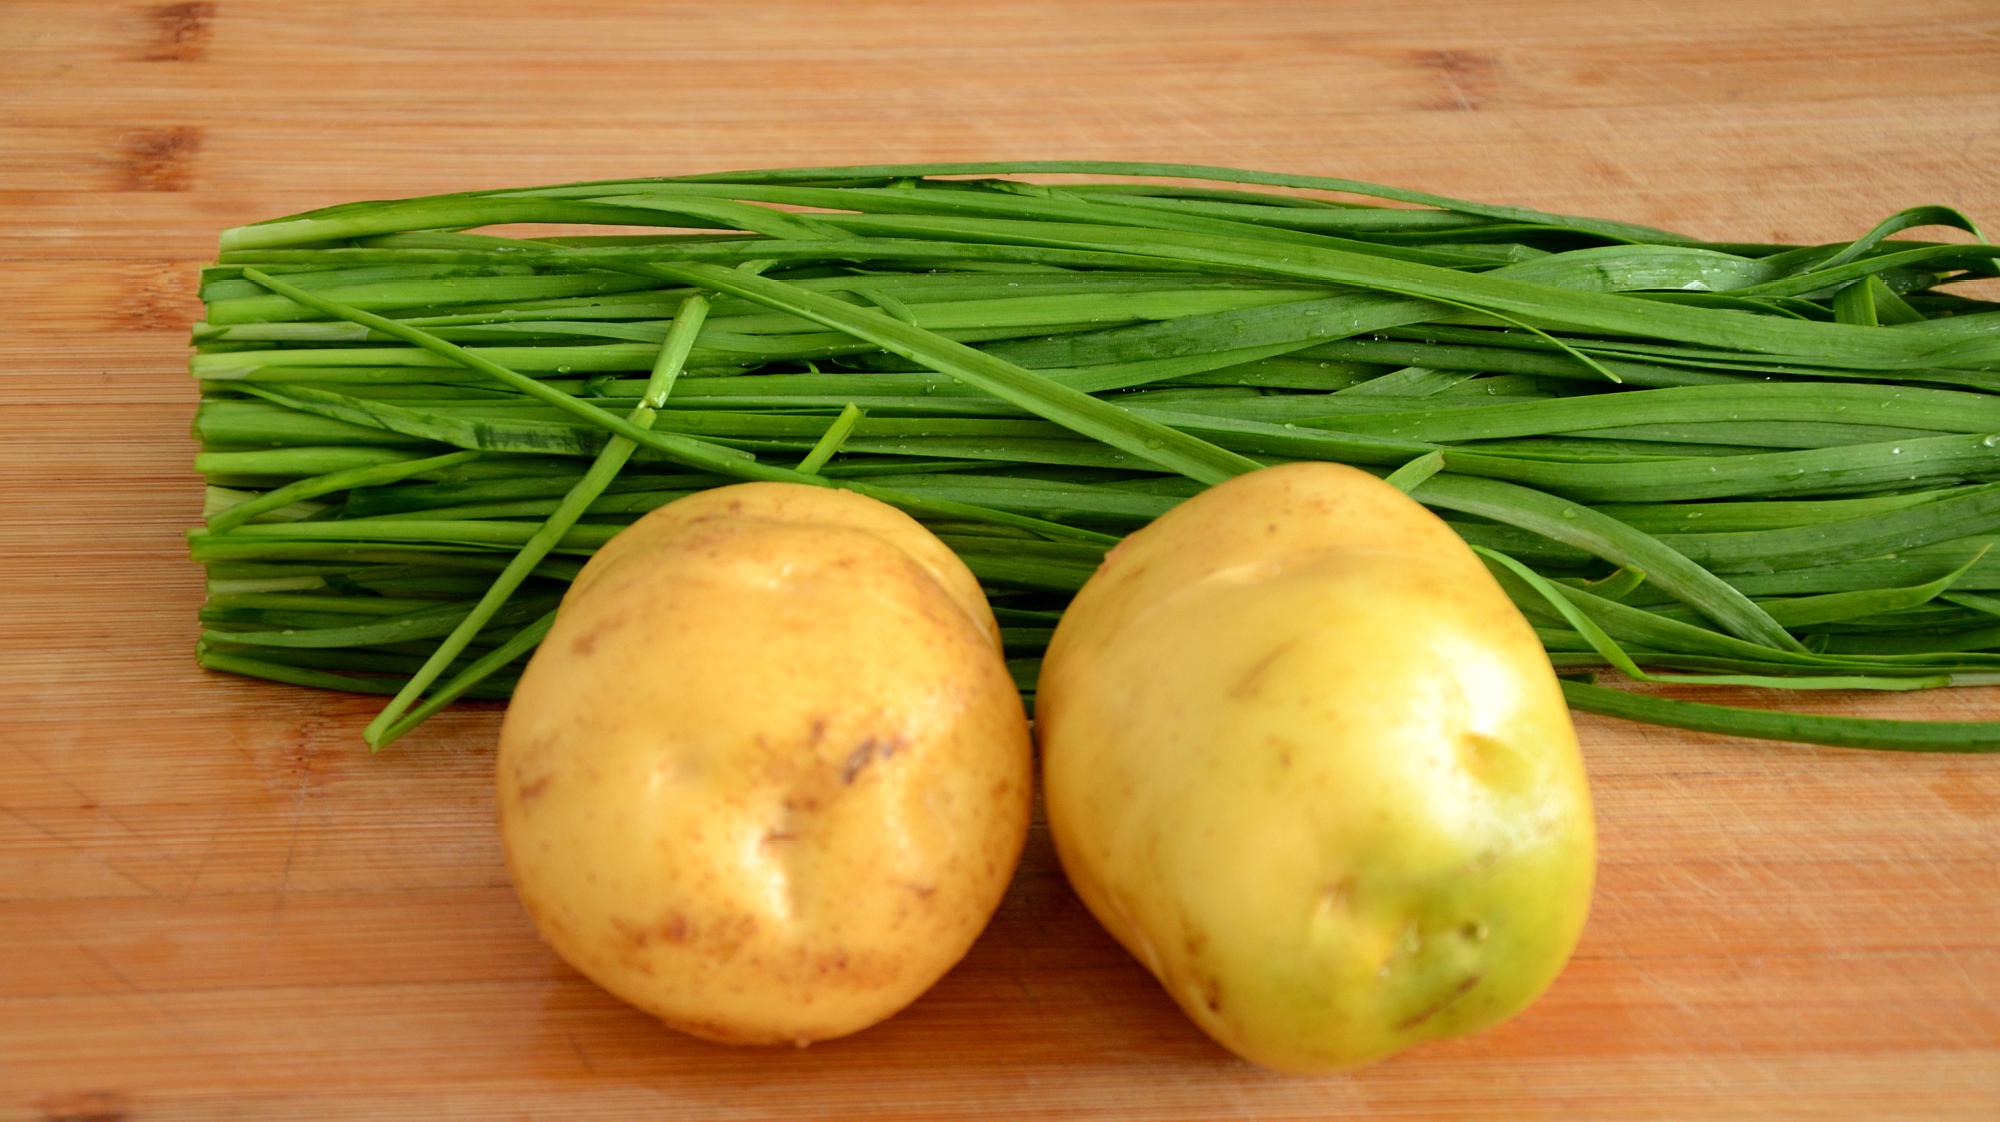 1土豆韭菜:准备韭菜,土豆和饺子皮,这种方法做出来的韭菜盒子味道超香